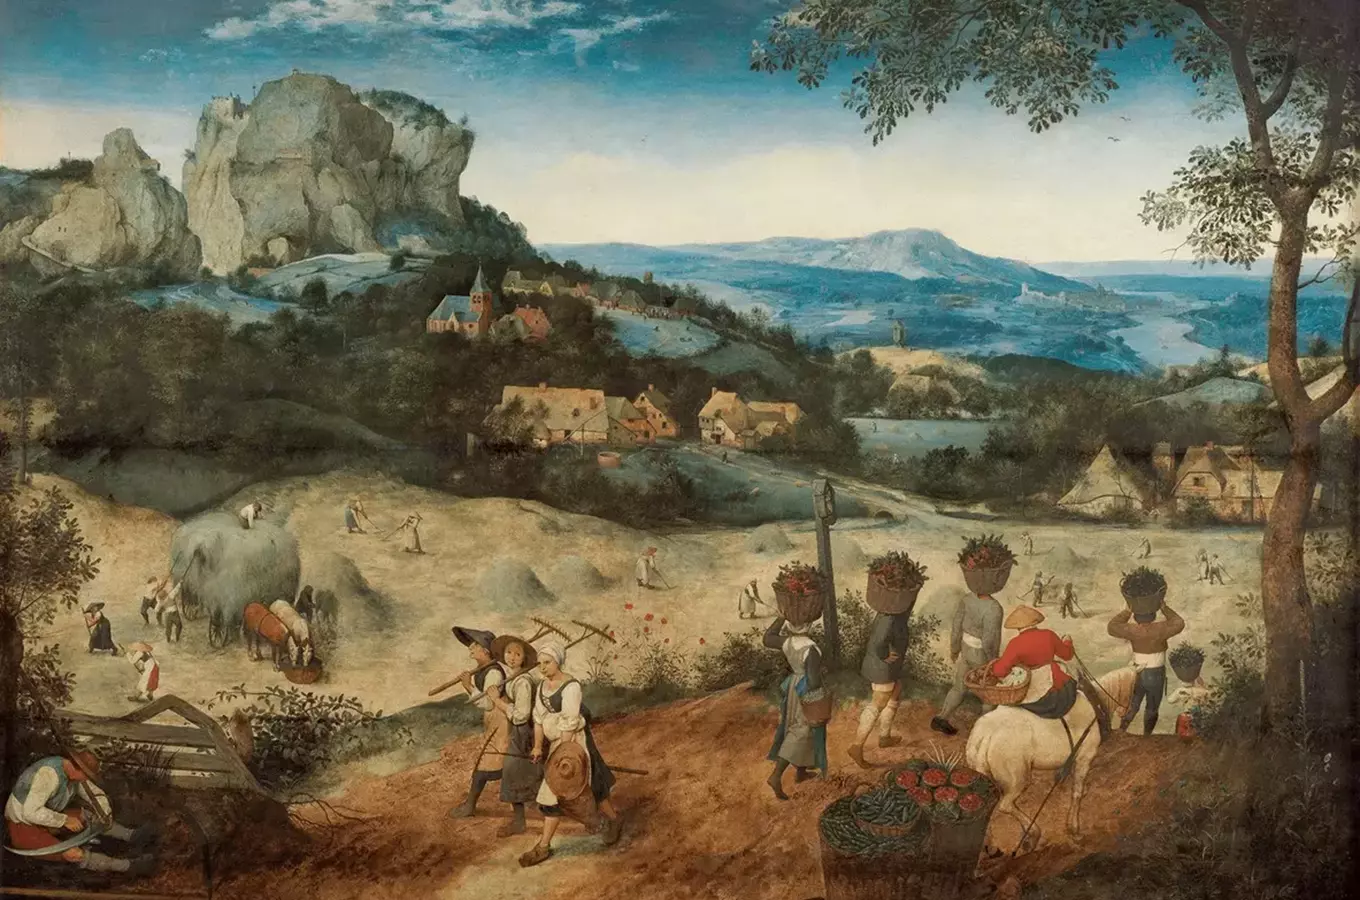 Cesty za uměním: Pieter Bruegel, Senoseč, Pražský hrad a bruegelovský brajgl